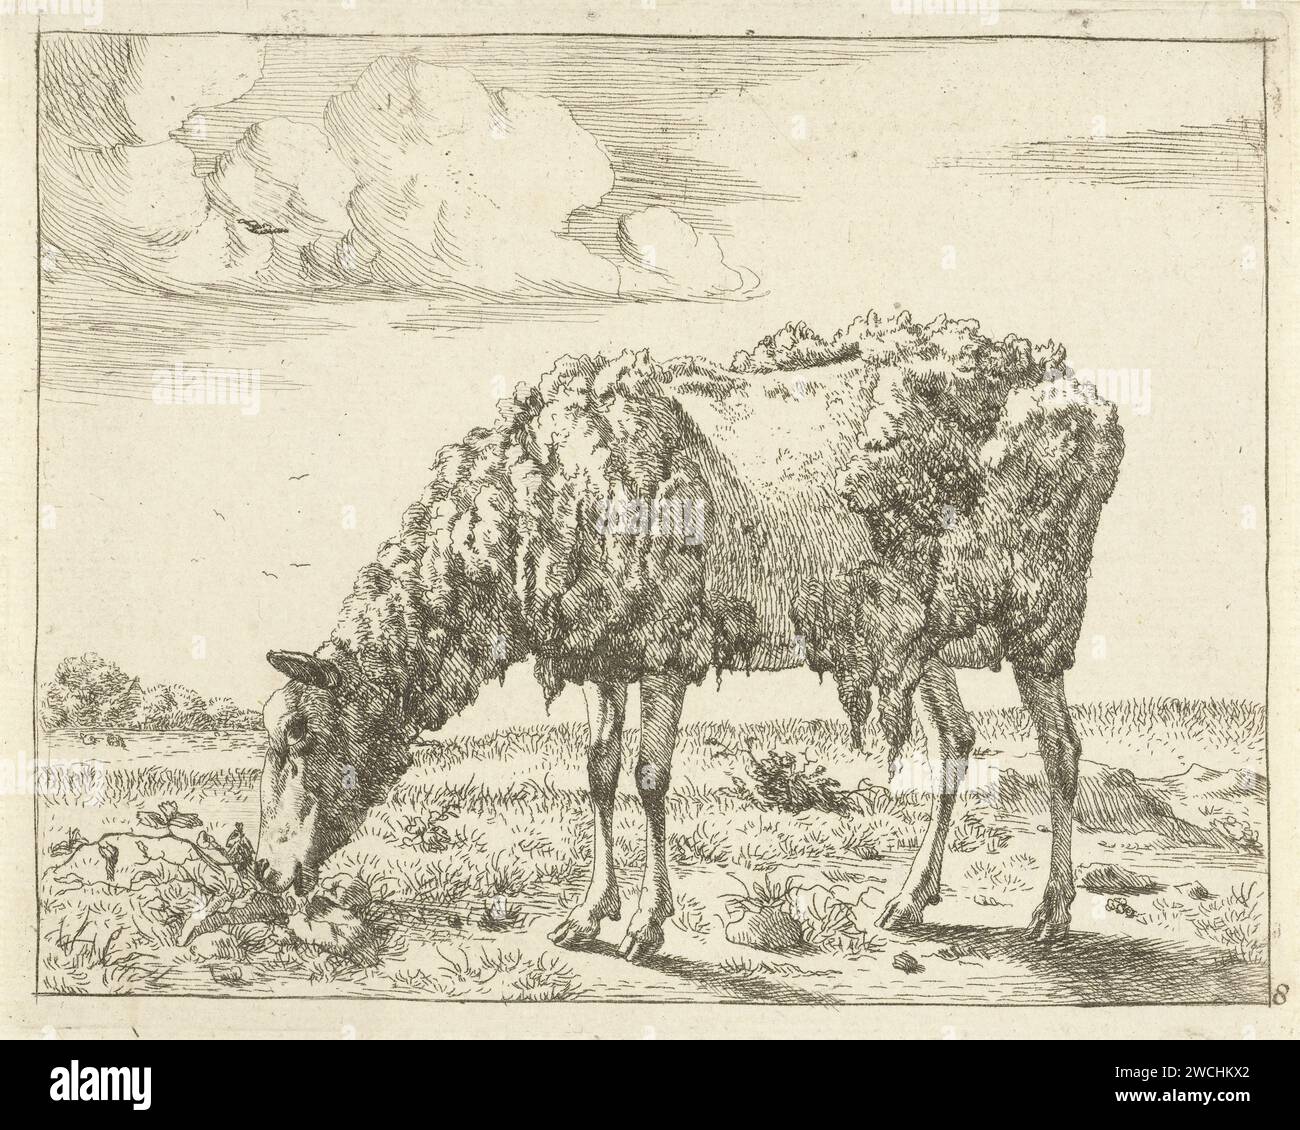 Schaap, Marcus de Bye, d'après Paulus Potter, 1728 - 1761 imprimer le papier de la Haye gravure des moutons Banque D'Images